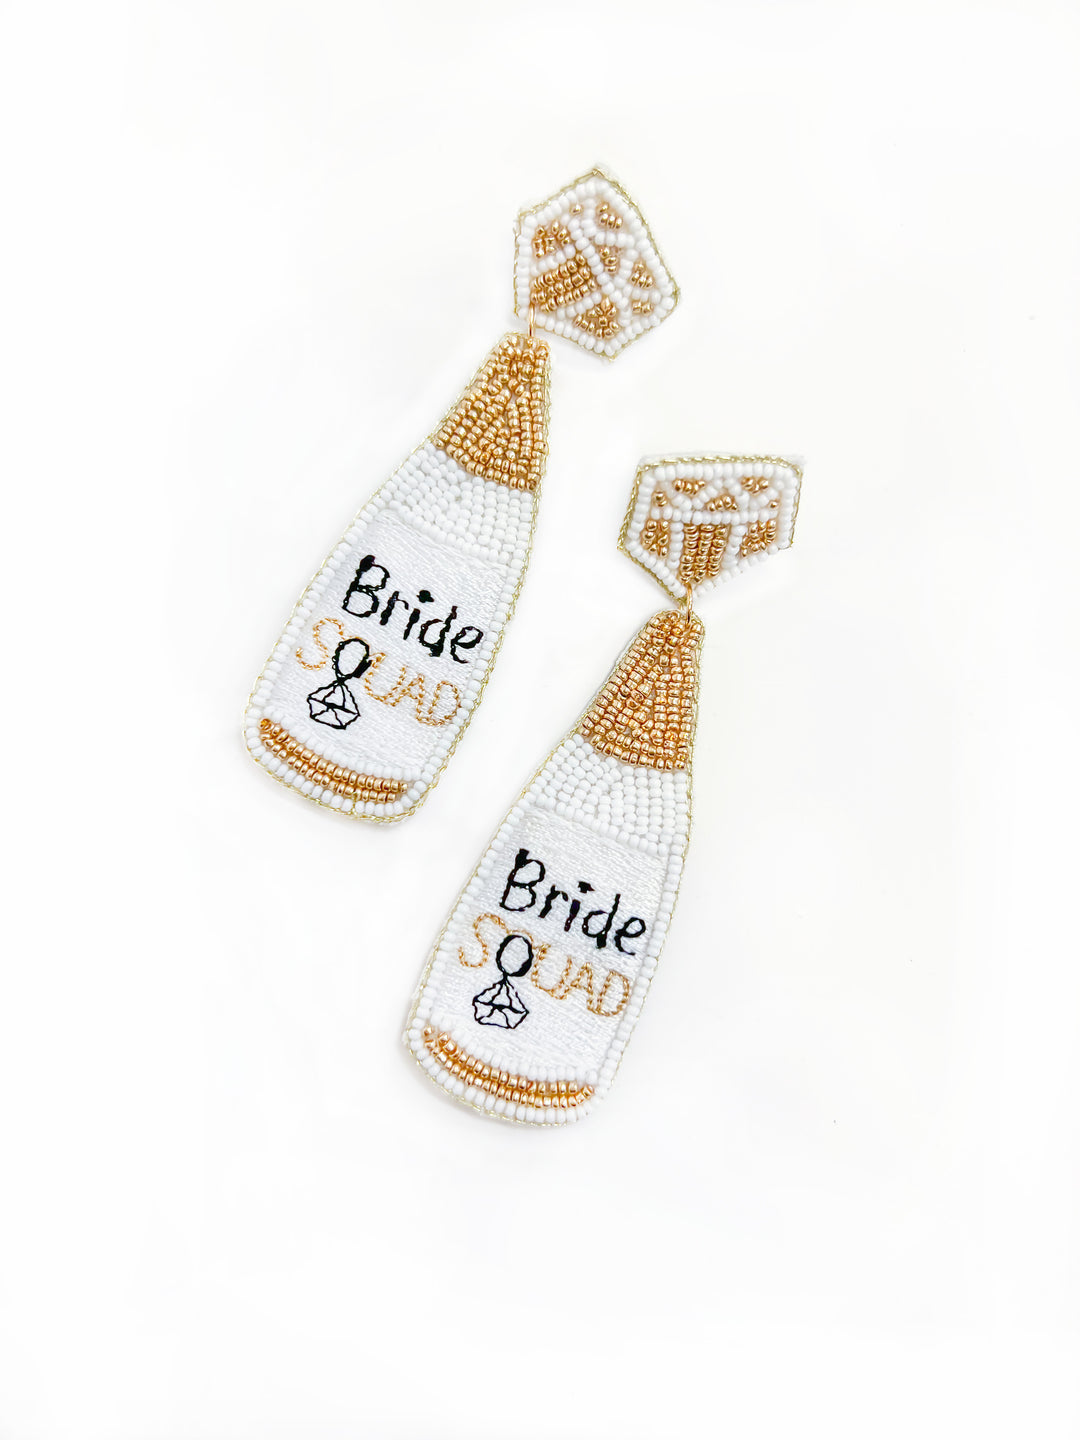 BEADED BOTTLE BRIDE EARRINGS- WHITE